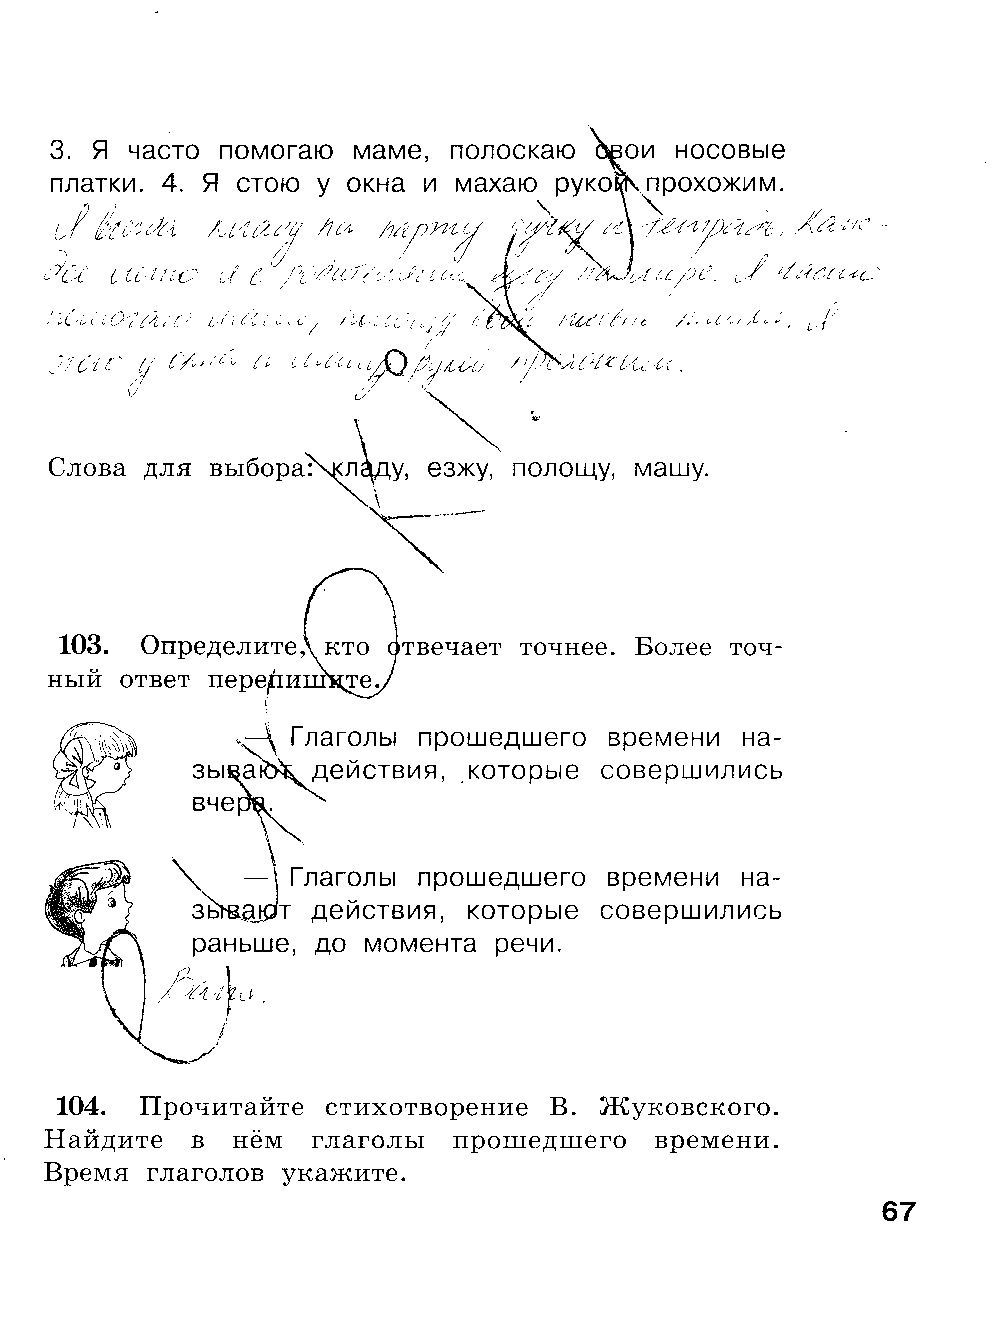 ГДЗ Русский язык 3 класс - стр. 67